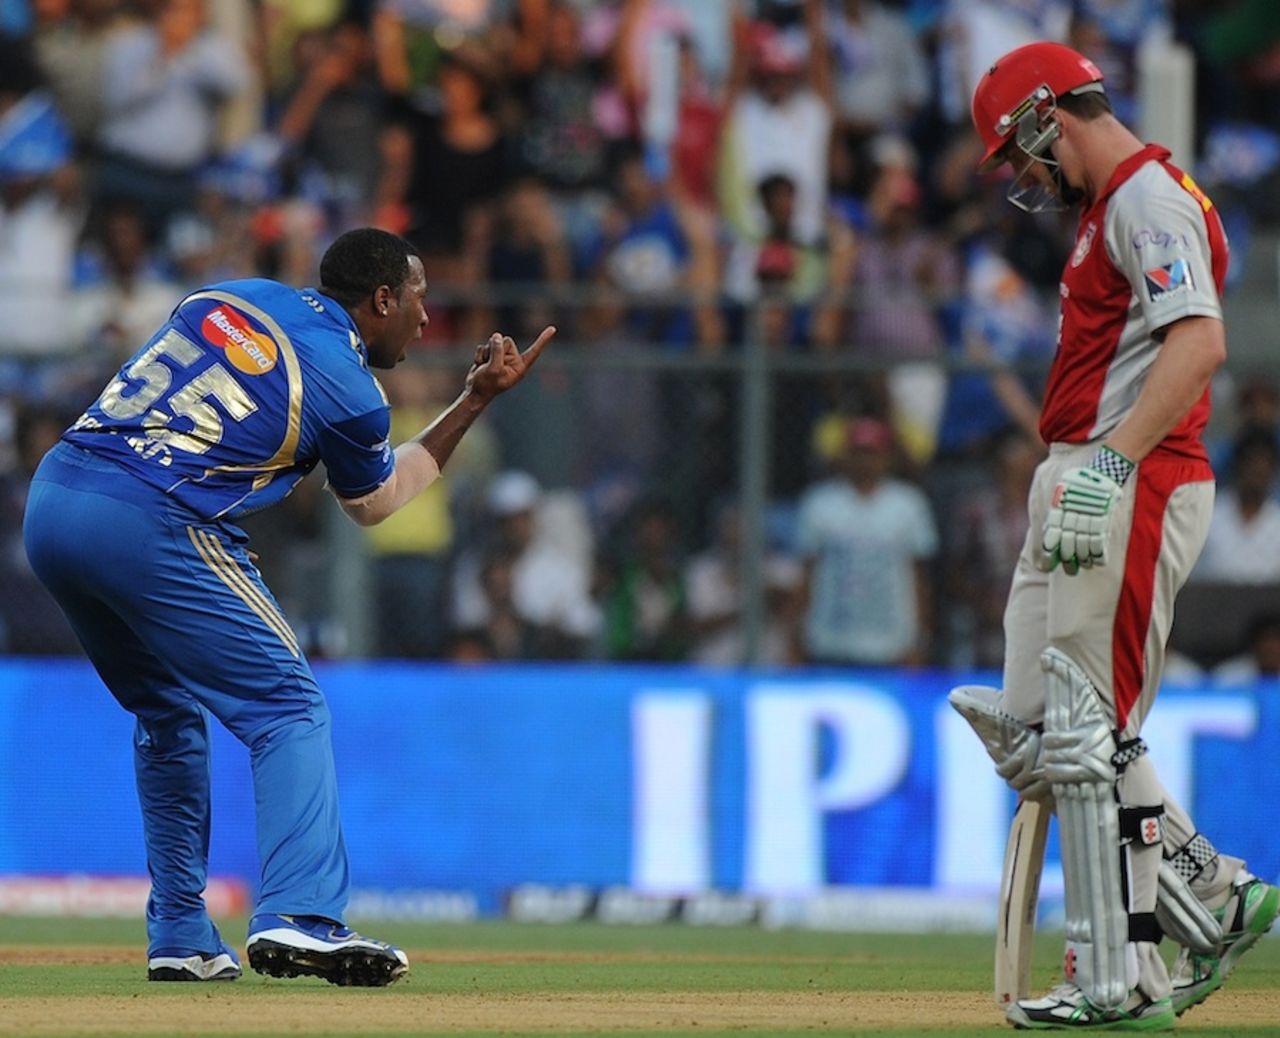 Kieron Pollard celebrates a wicket, Mumbai Indians v Kings XI Punjab, IPL, Mumbai, April 22, 2012